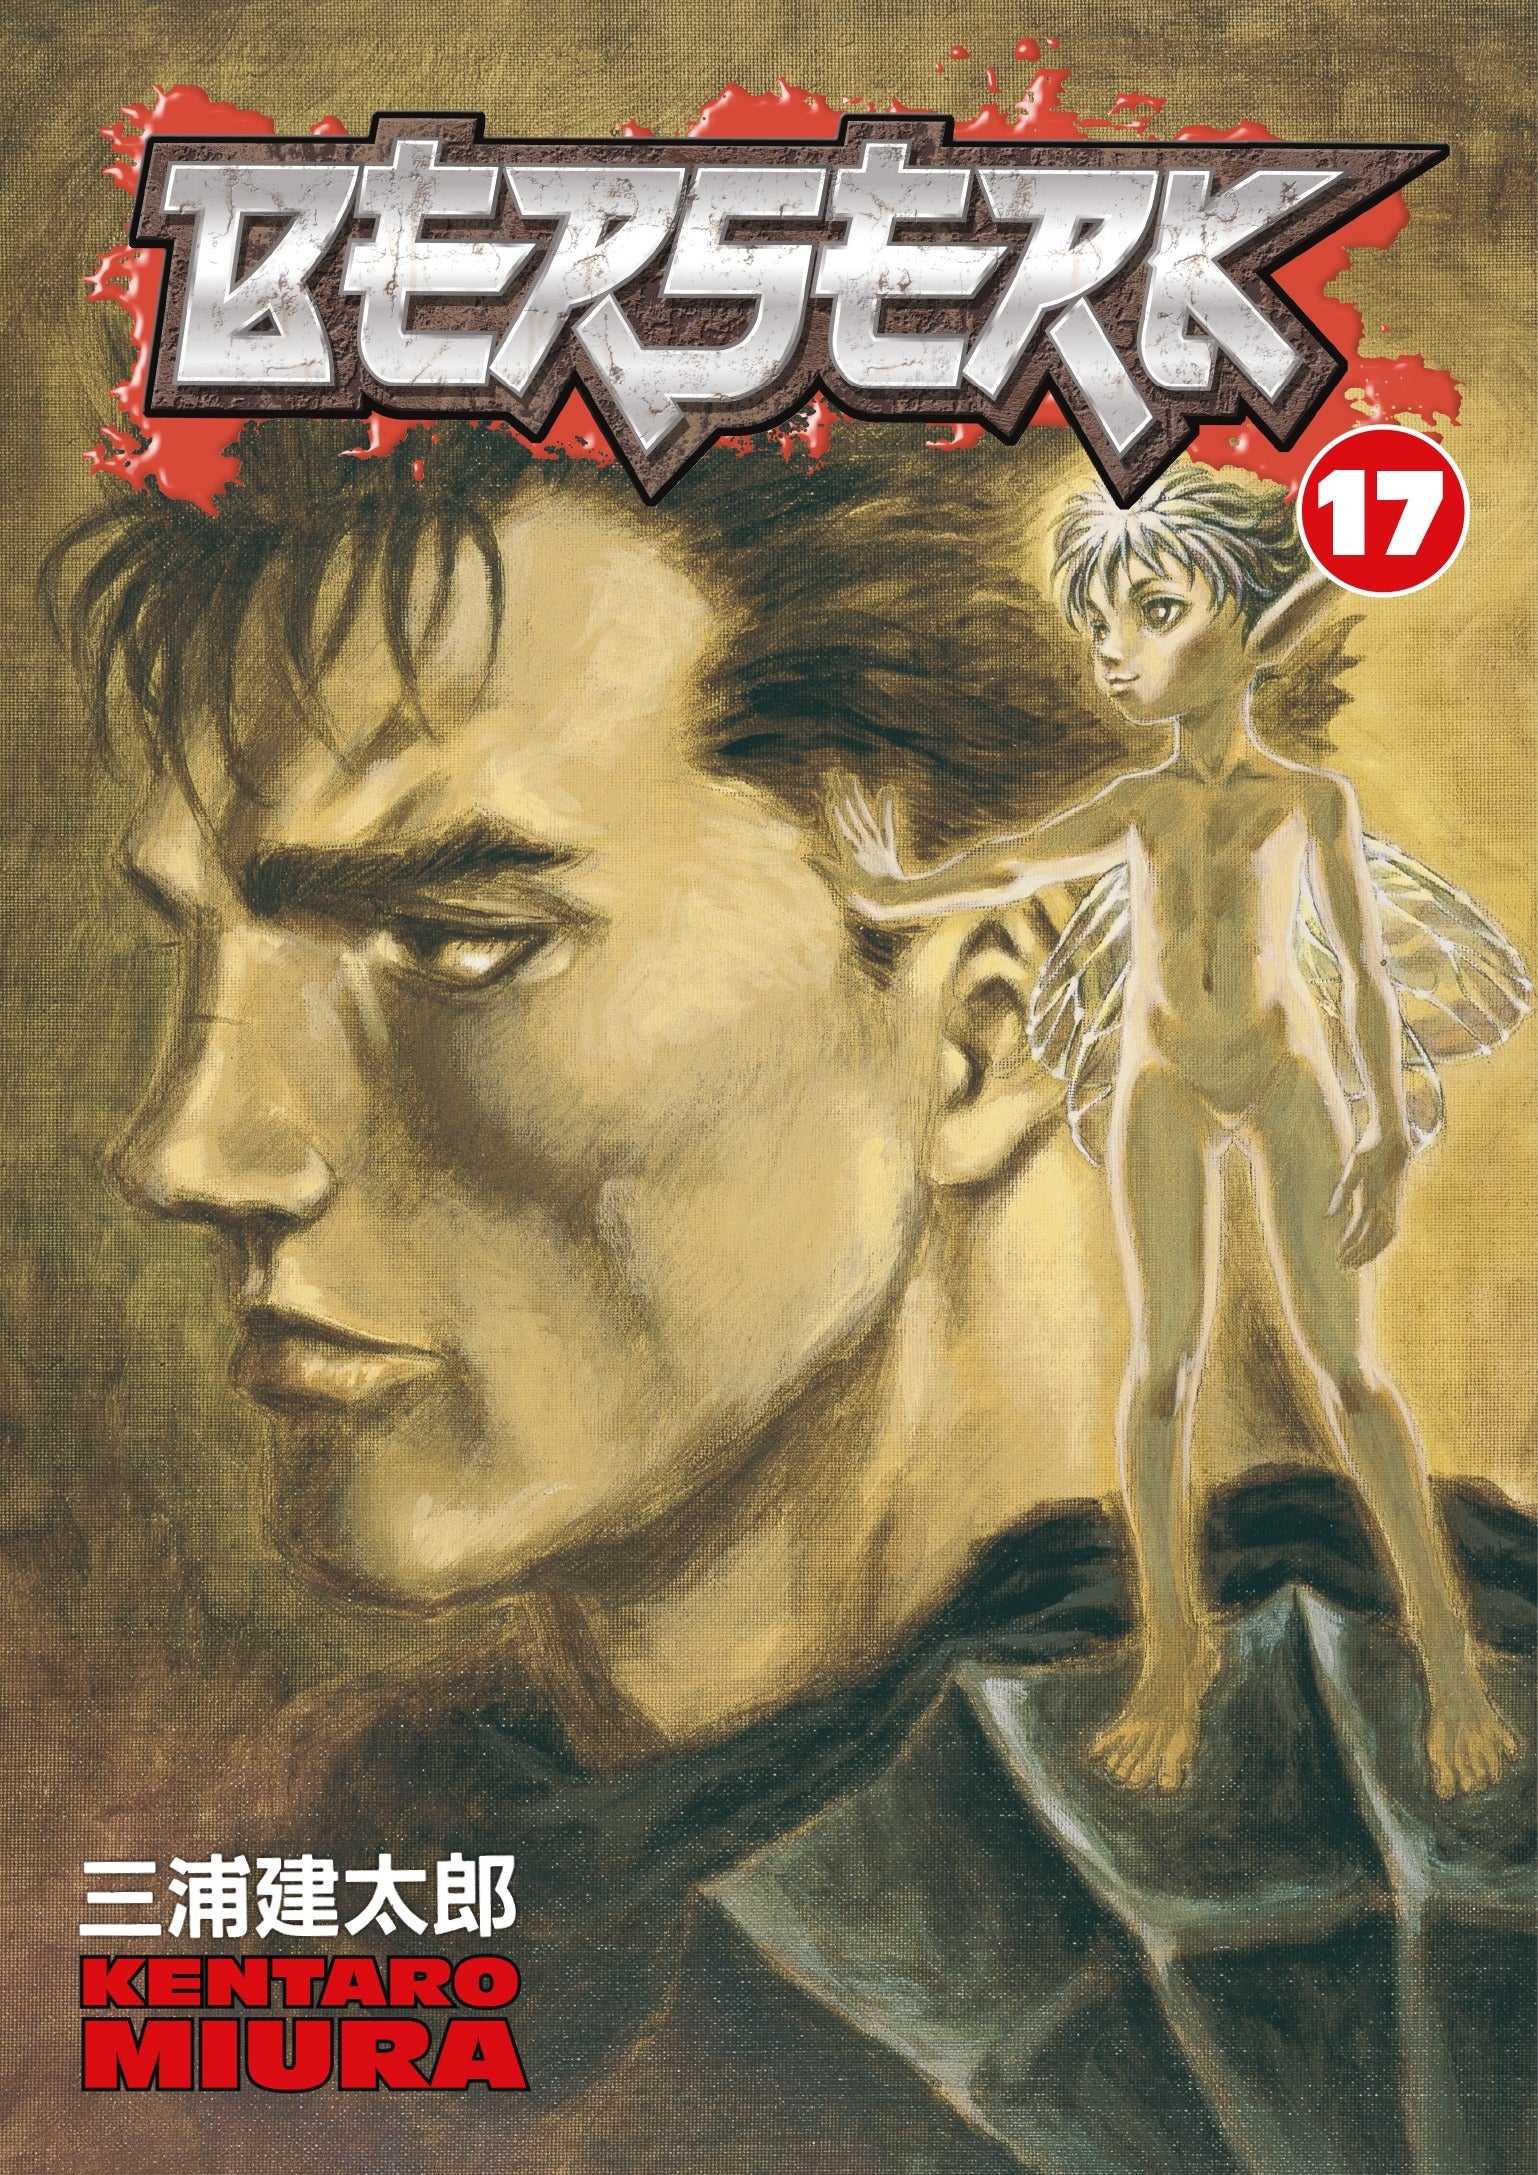 Berserk Vol. 17 (Manga)